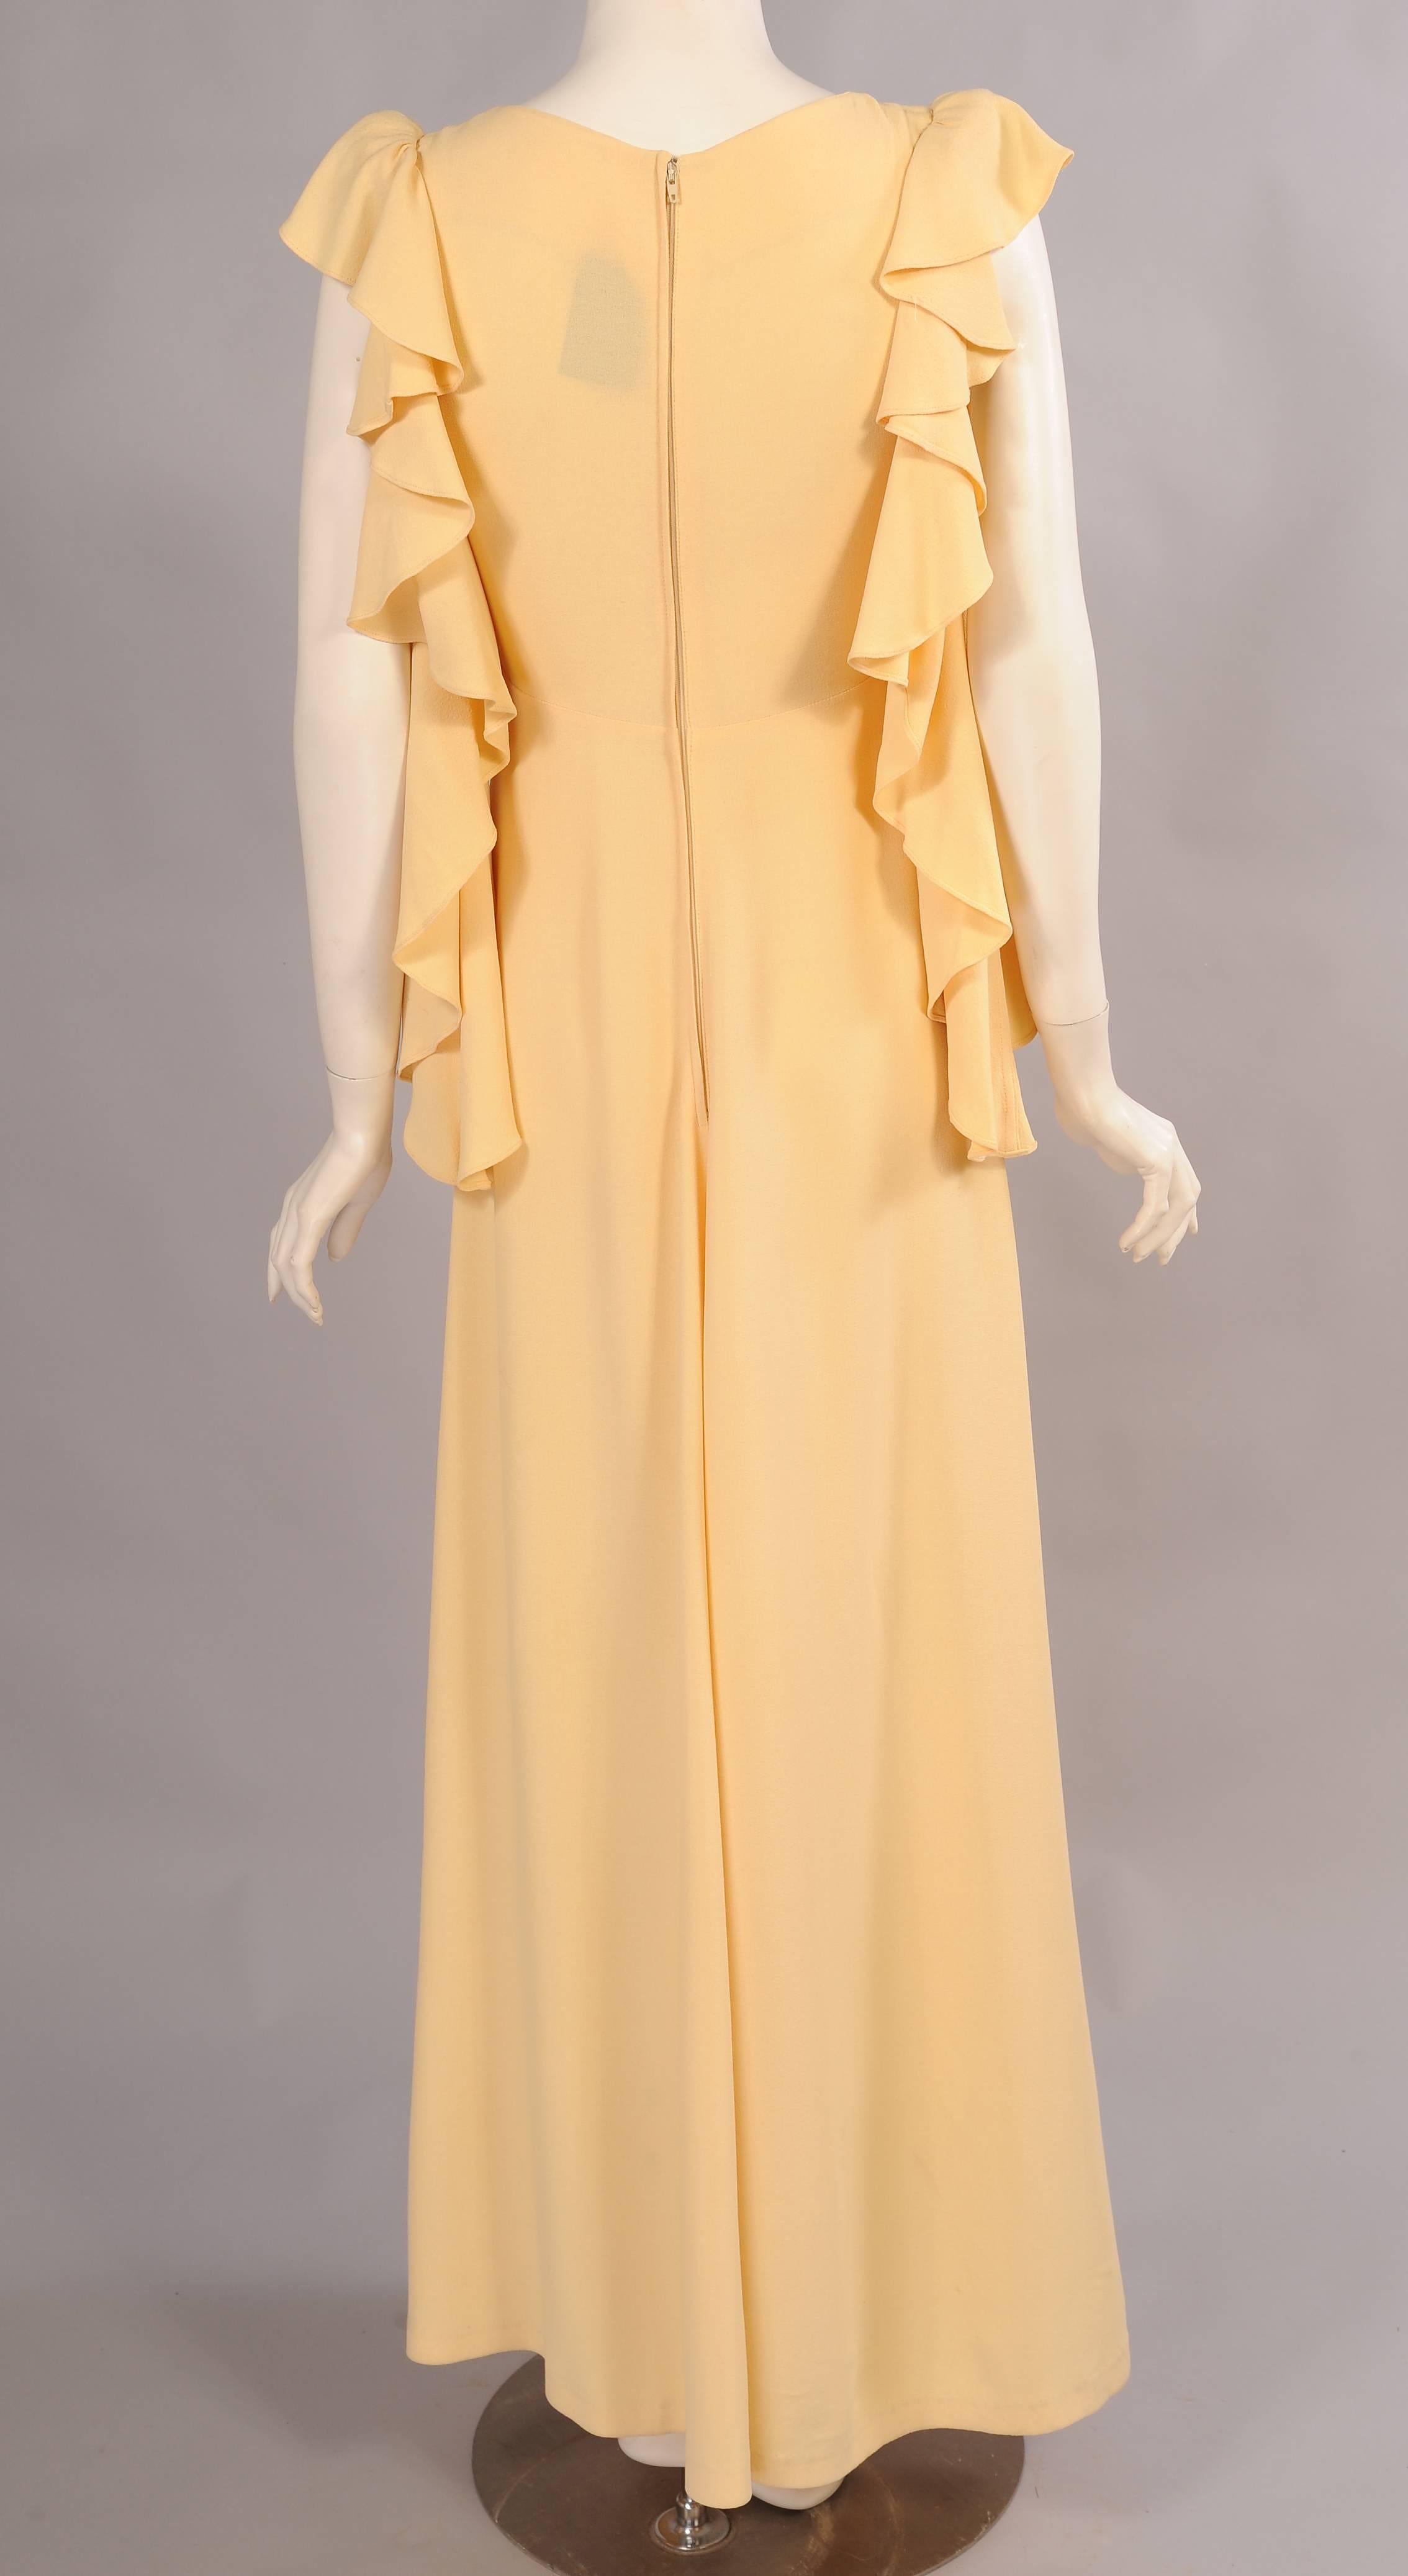 Women's Biba 1970's Yellow Crepe Dress with Ruffles